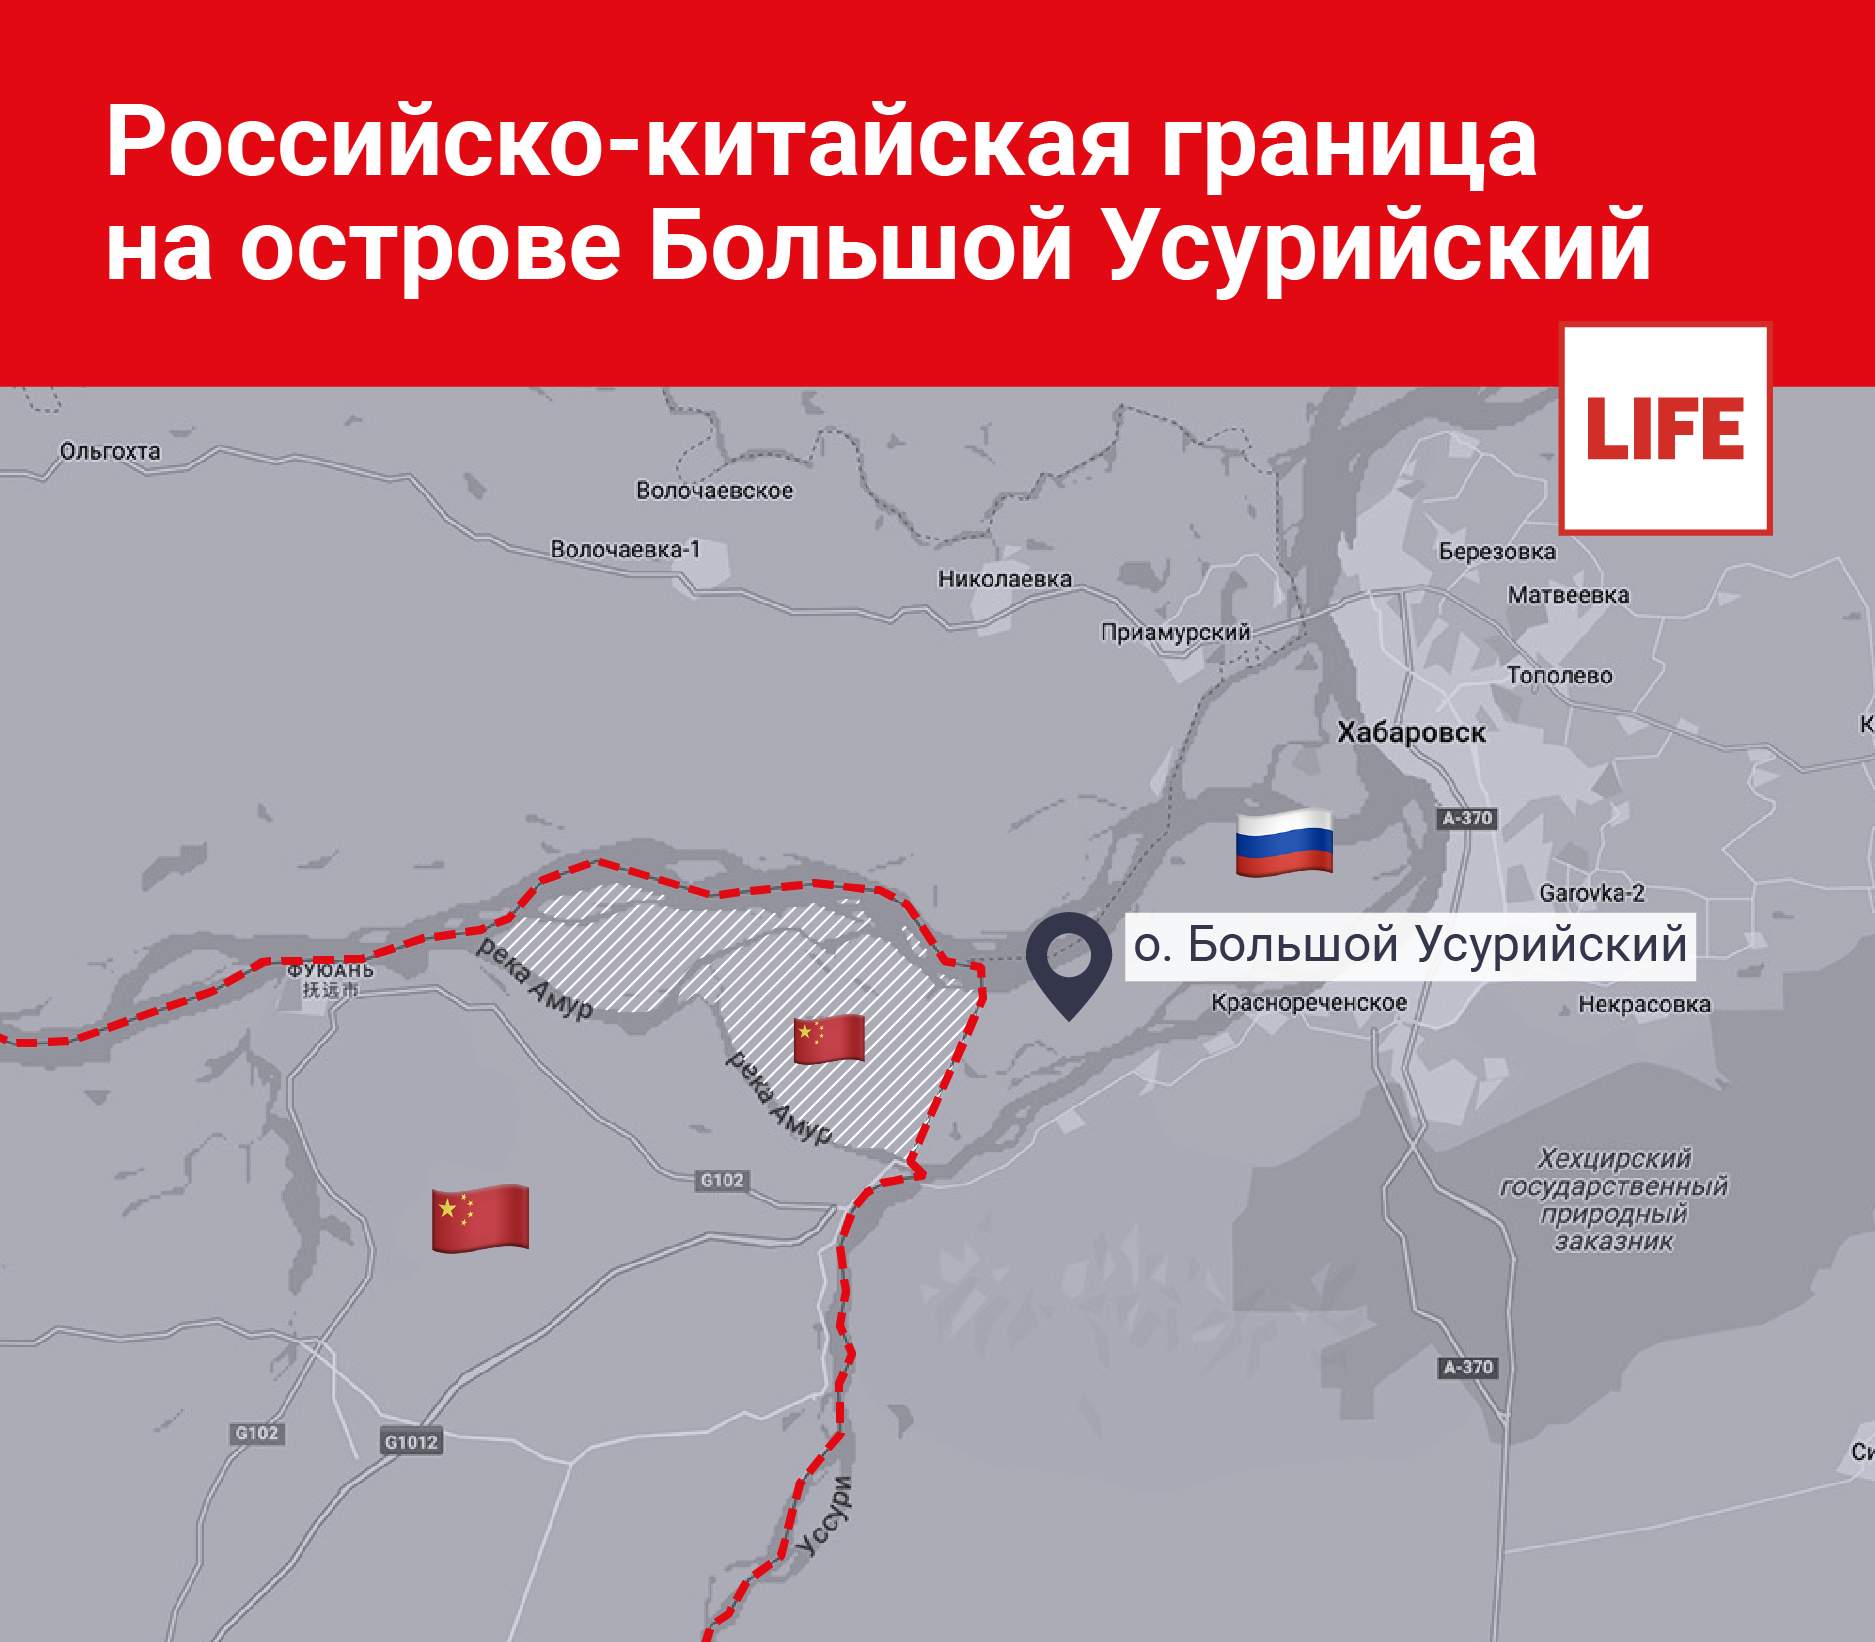 Российско-китайская граница на острове Большой Усурийский. Инфографика © LIFE.